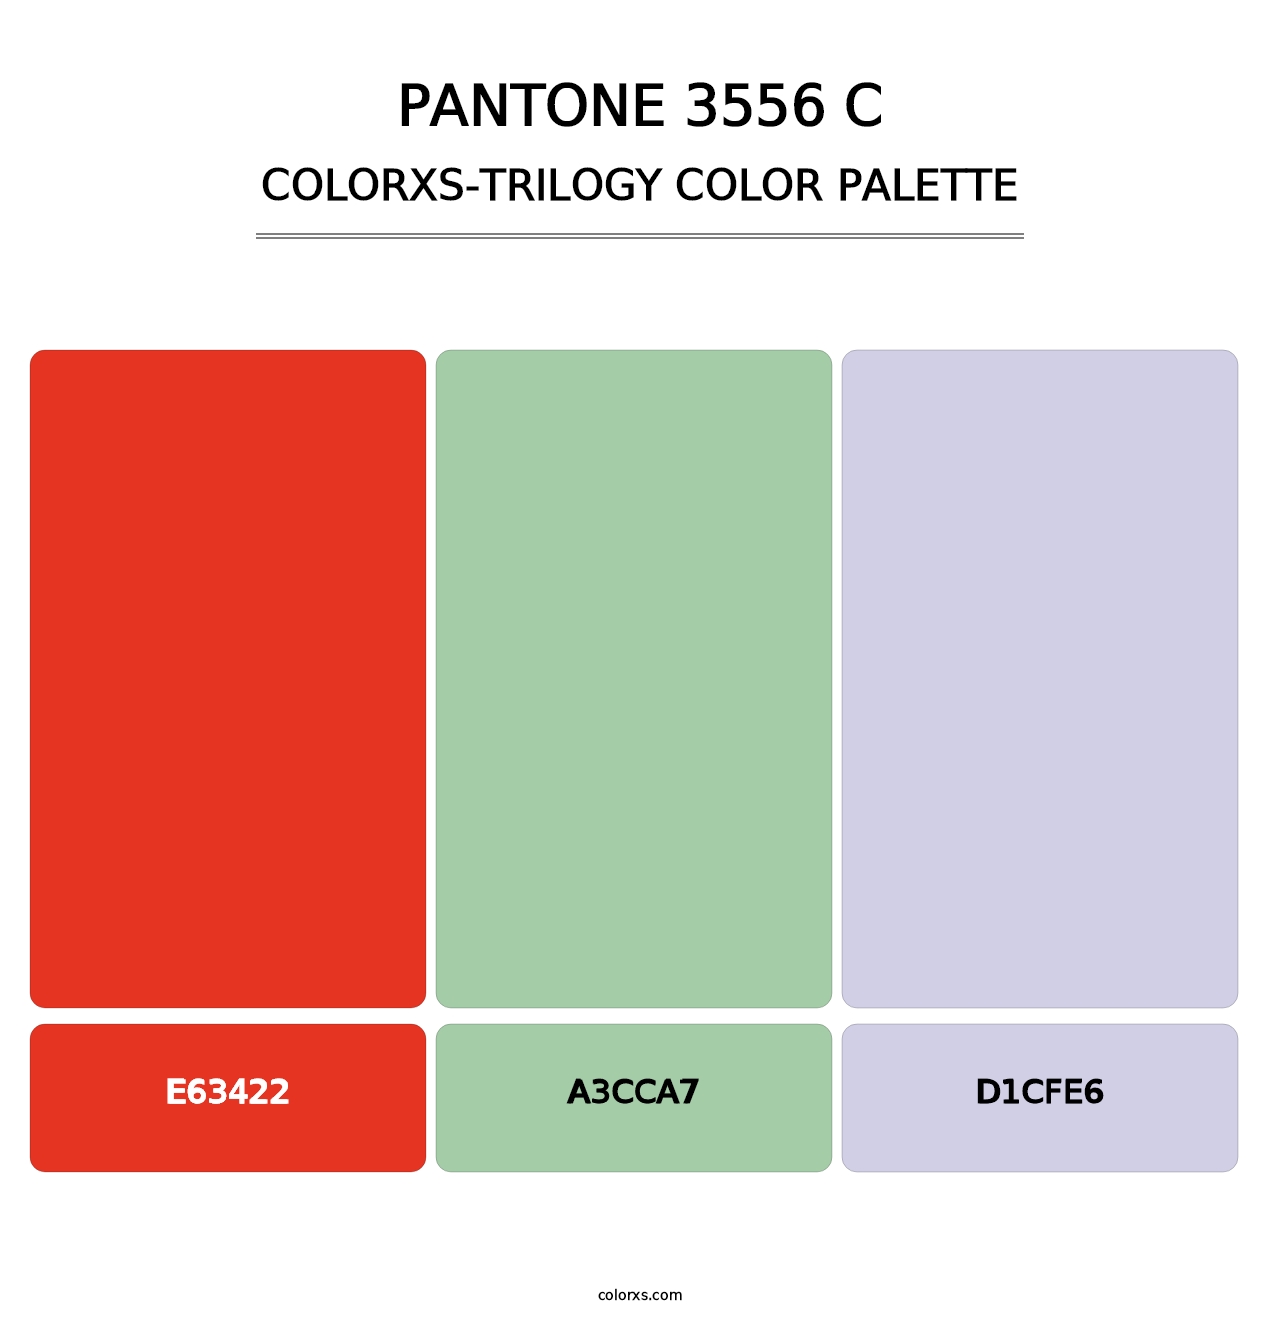 PANTONE 3556 C - Colorxs Trilogy Palette